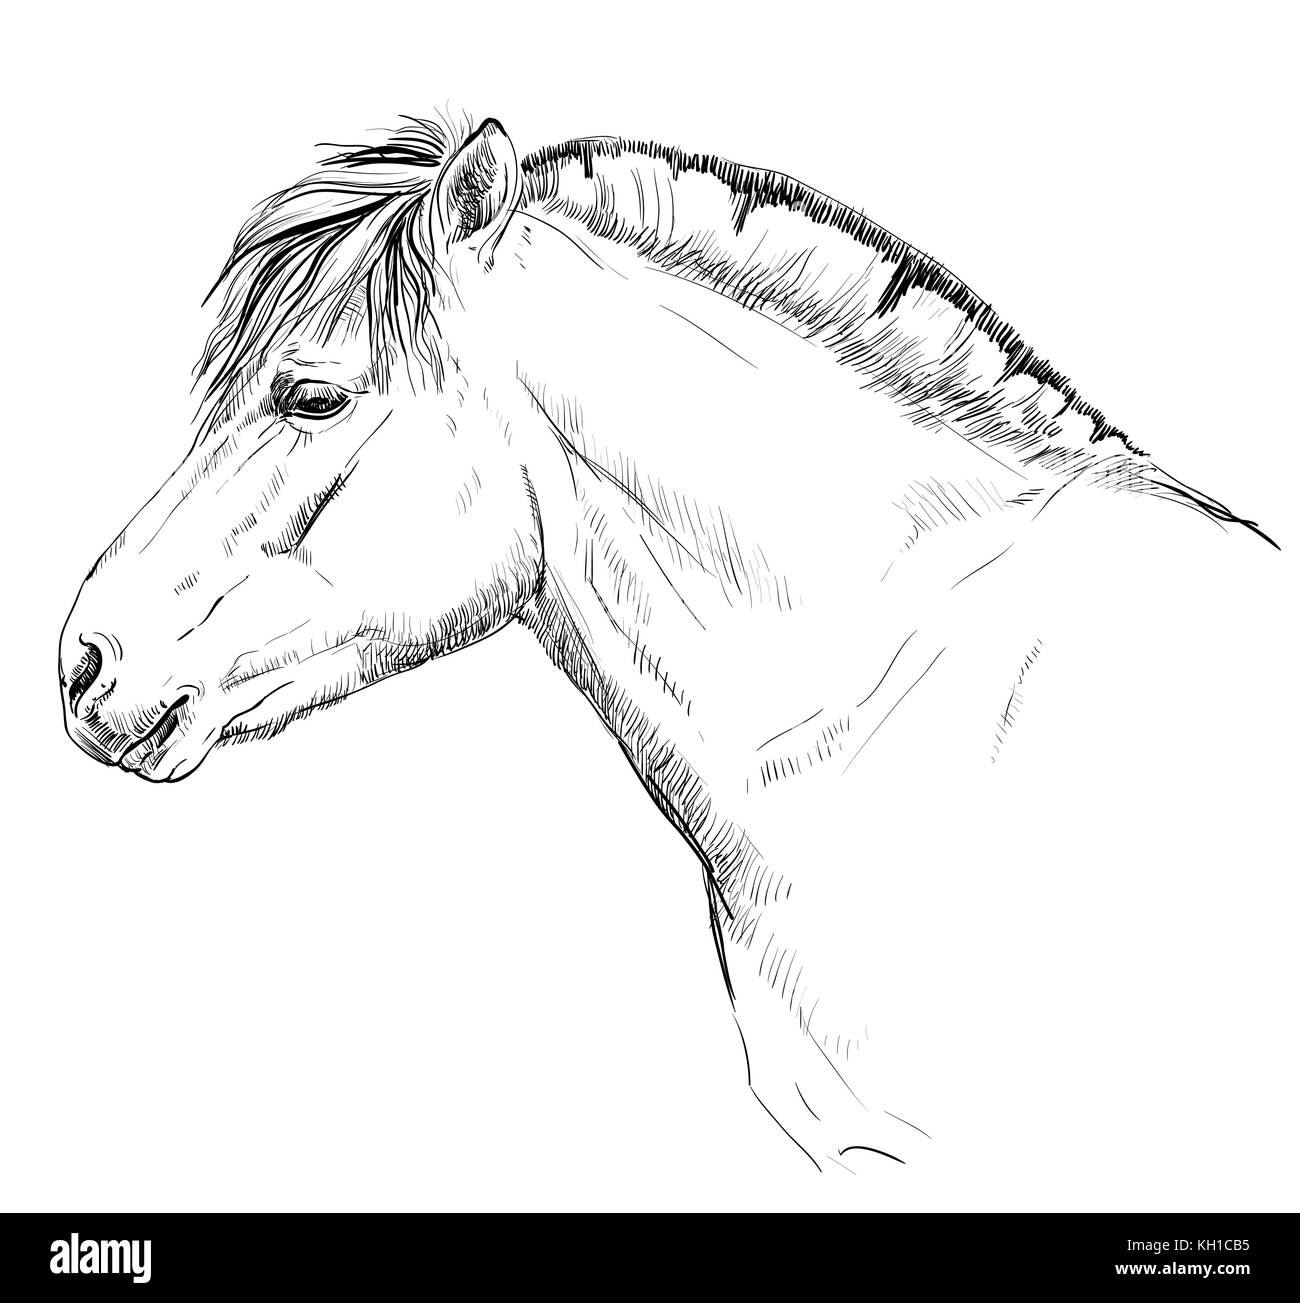 Portrait de profil en tête de cheval poney fjord norvégien (monochrome) vector dessin illustration isolé sur fond blanc Illustration de Vecteur